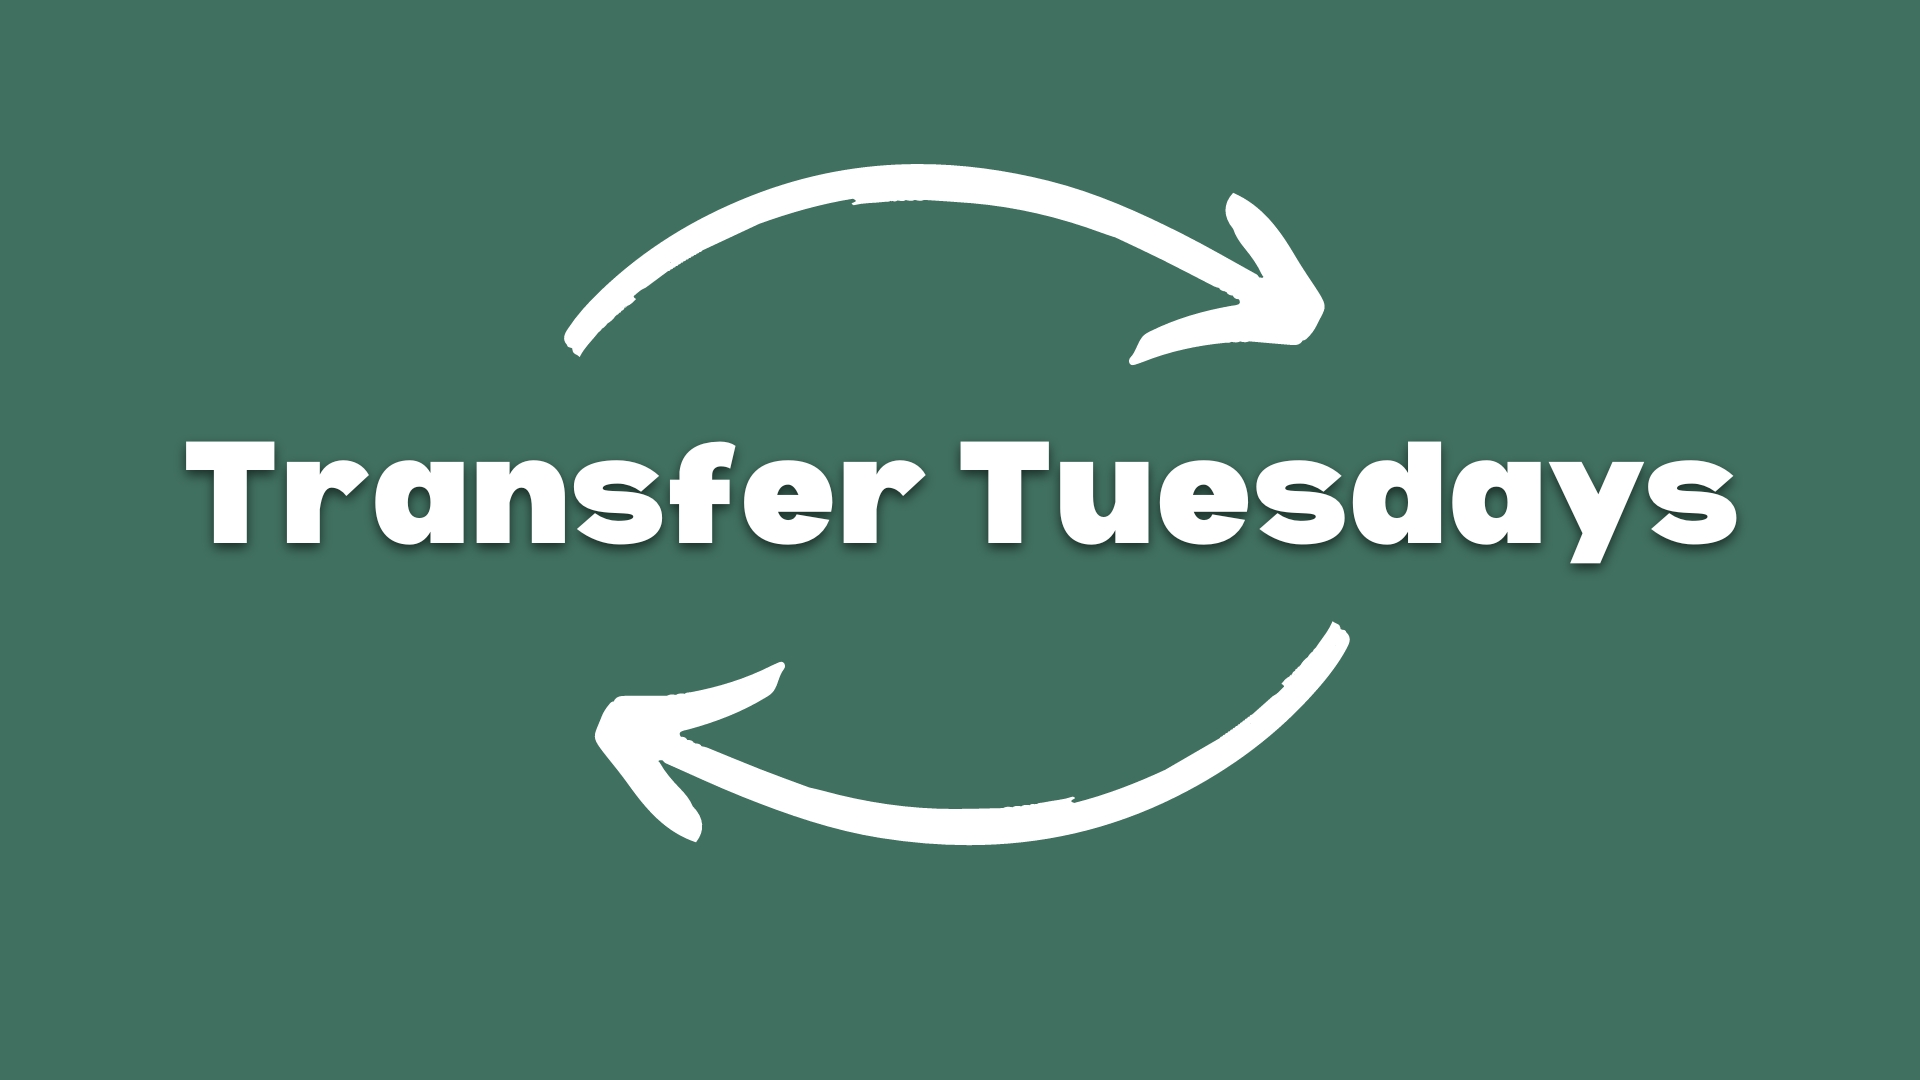 Transfer Tuesdays graphic